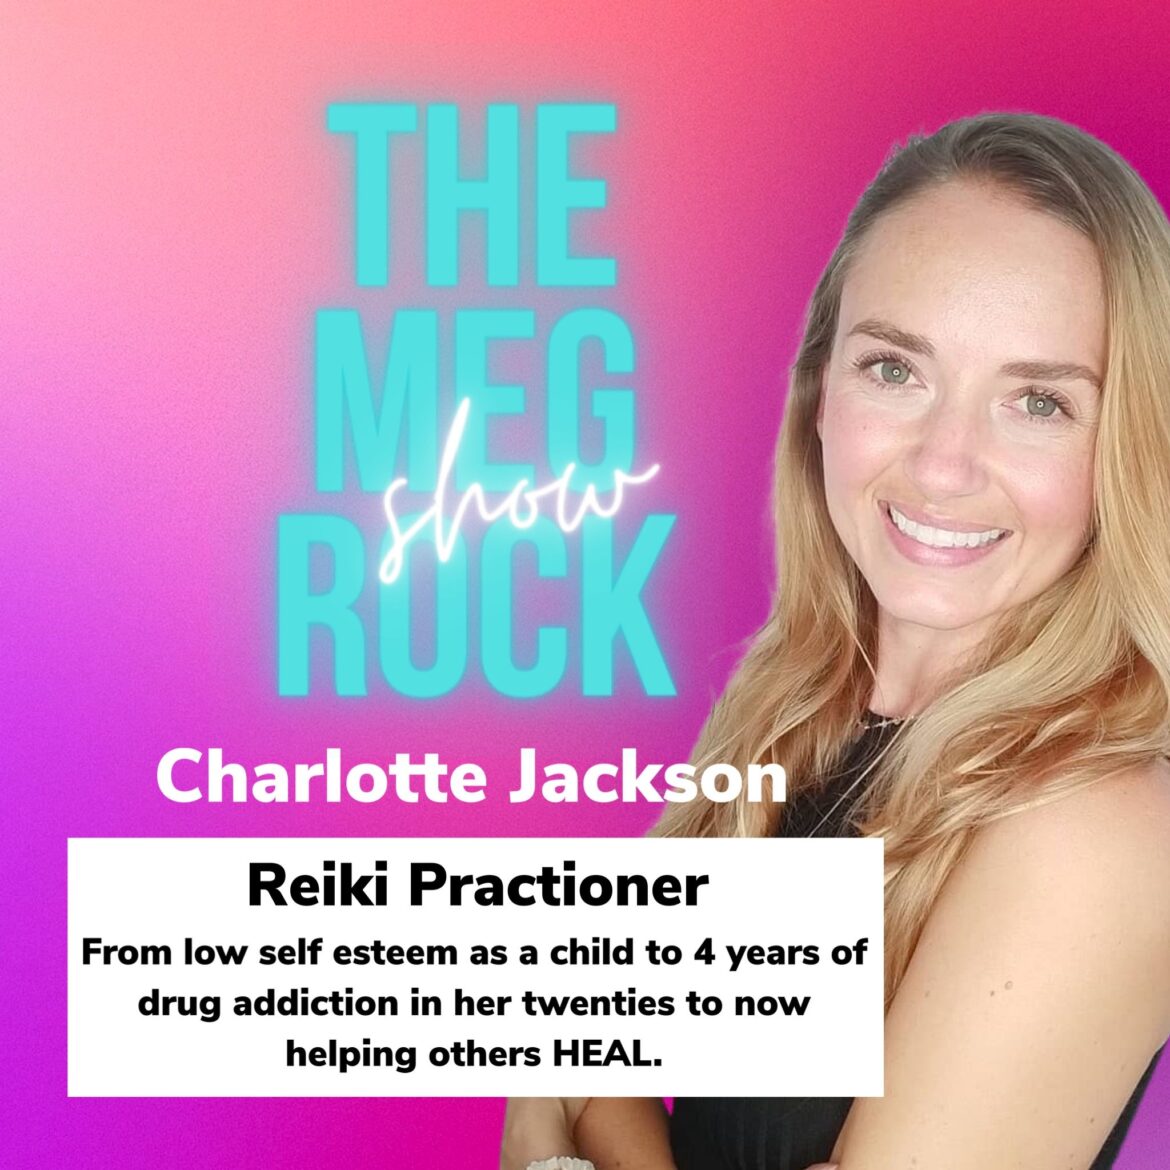 Charlotte Jackson